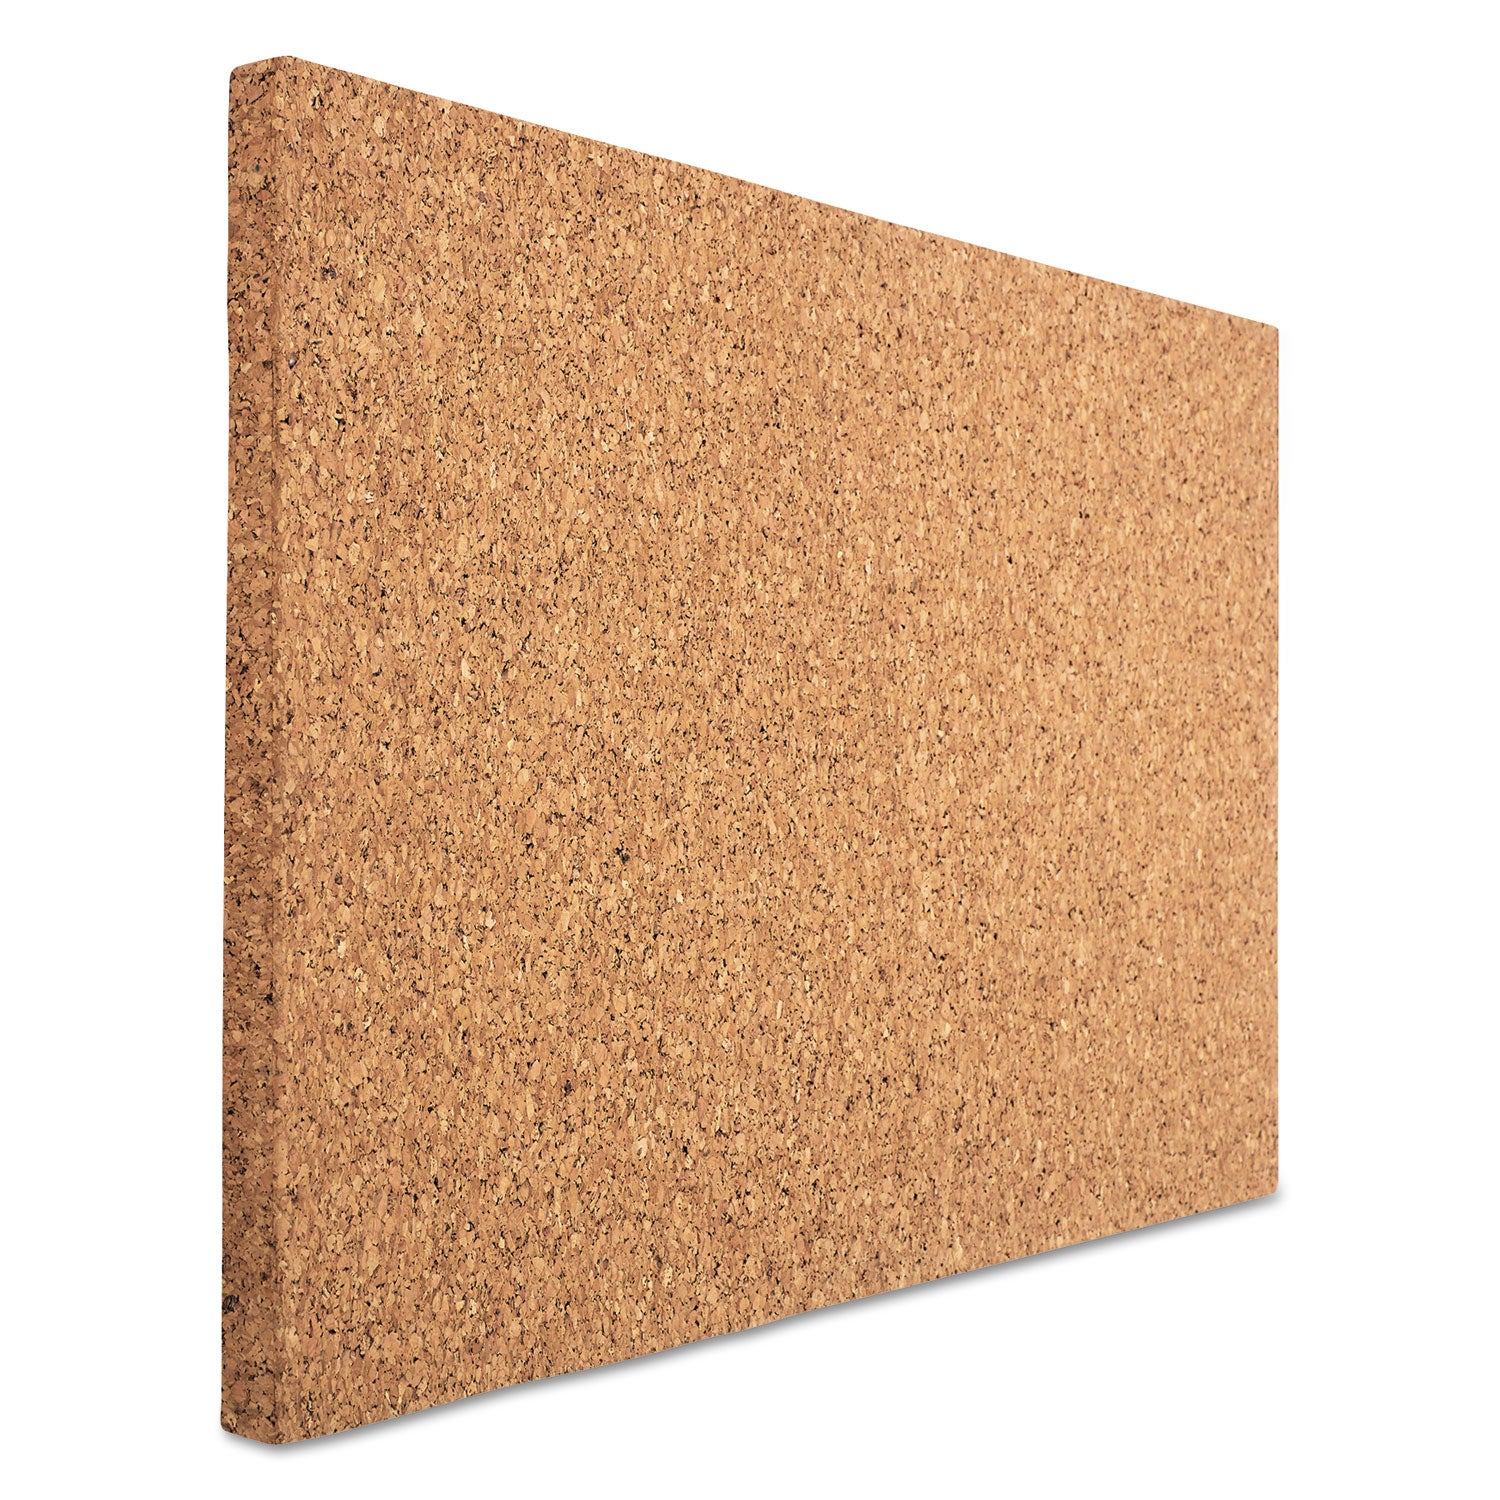 idesign-frameless-cork-bulletin-board-24-x-38-tan-surface_ice35010 - 2